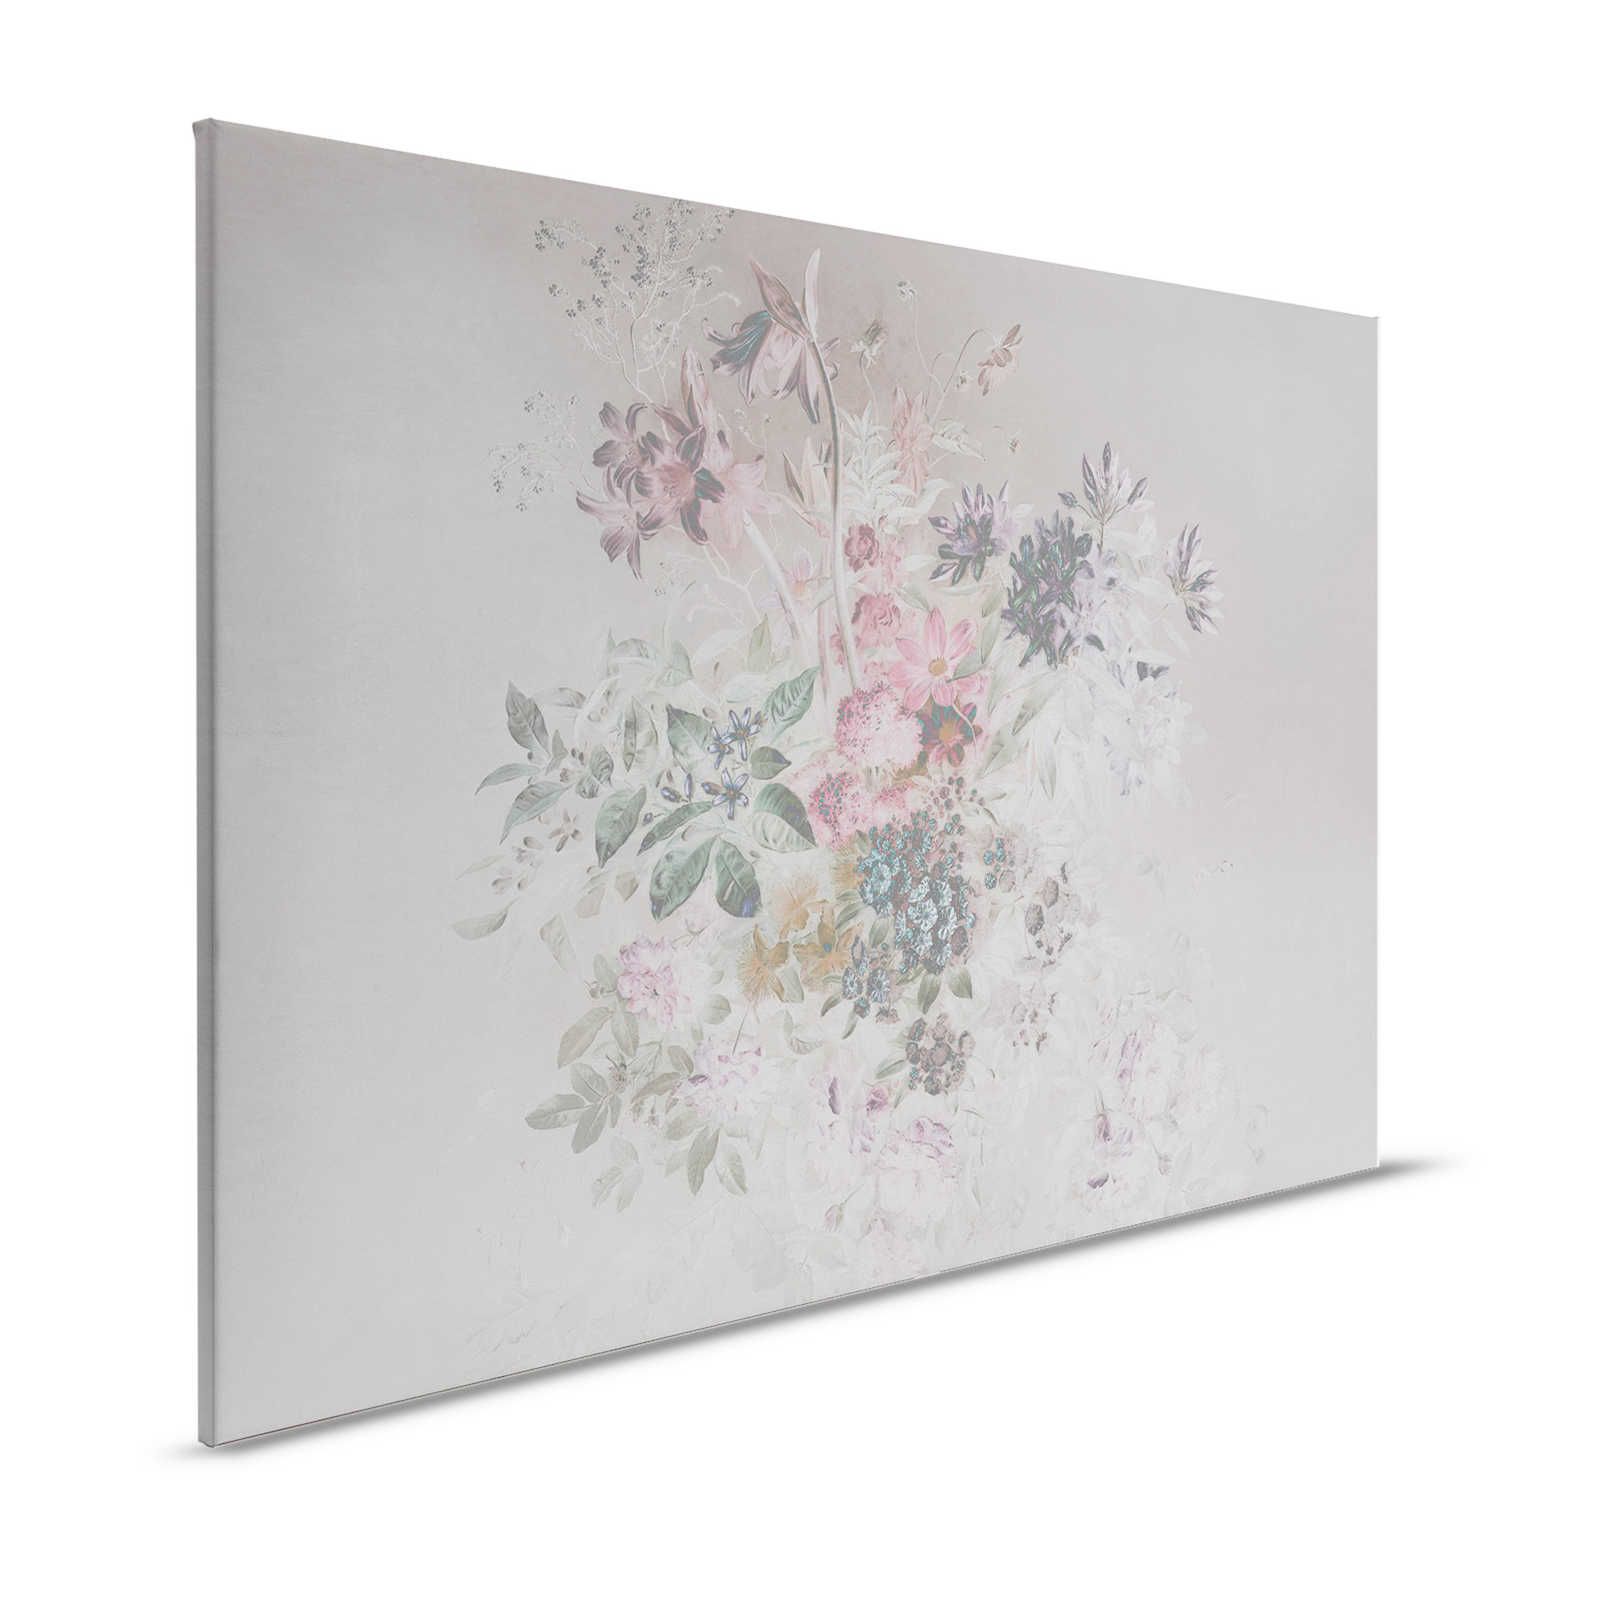 Quadro su tela con fiori e disegno a pastello - 0,90 m x 0,60 m
